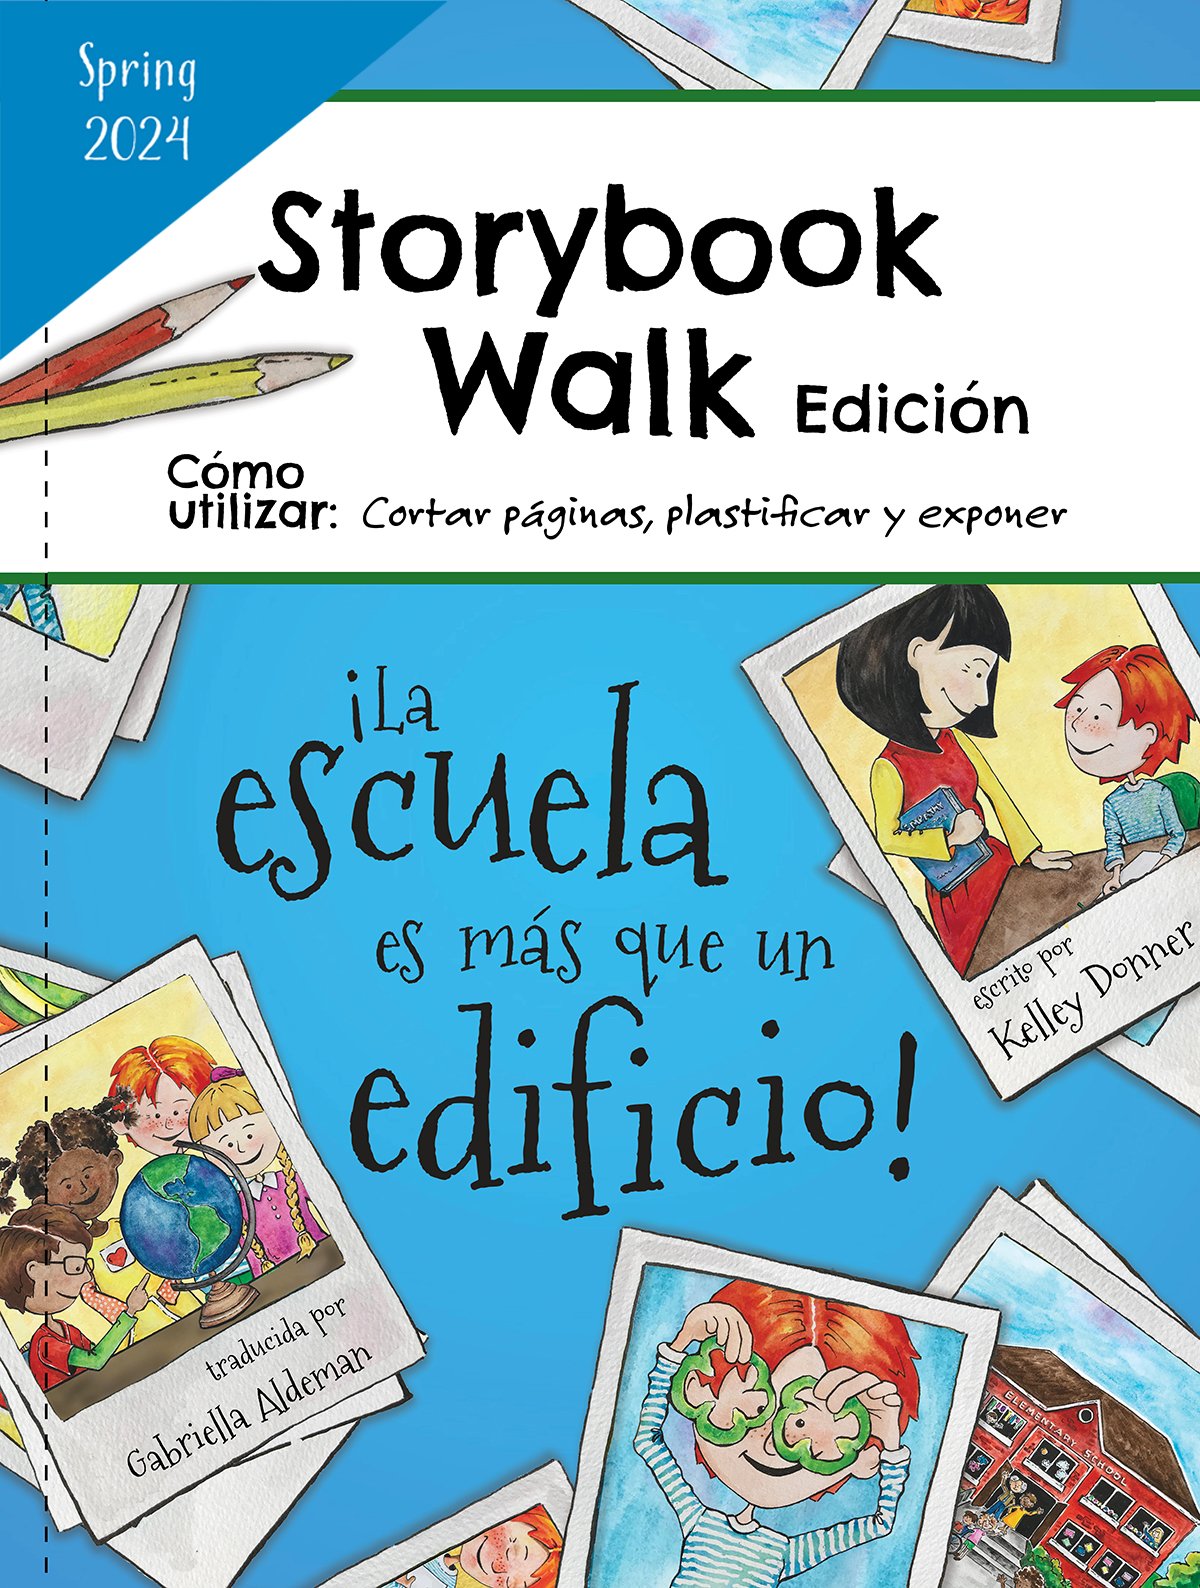 ¡La escuela es más que un edificio!: Edición Storybook Walk 